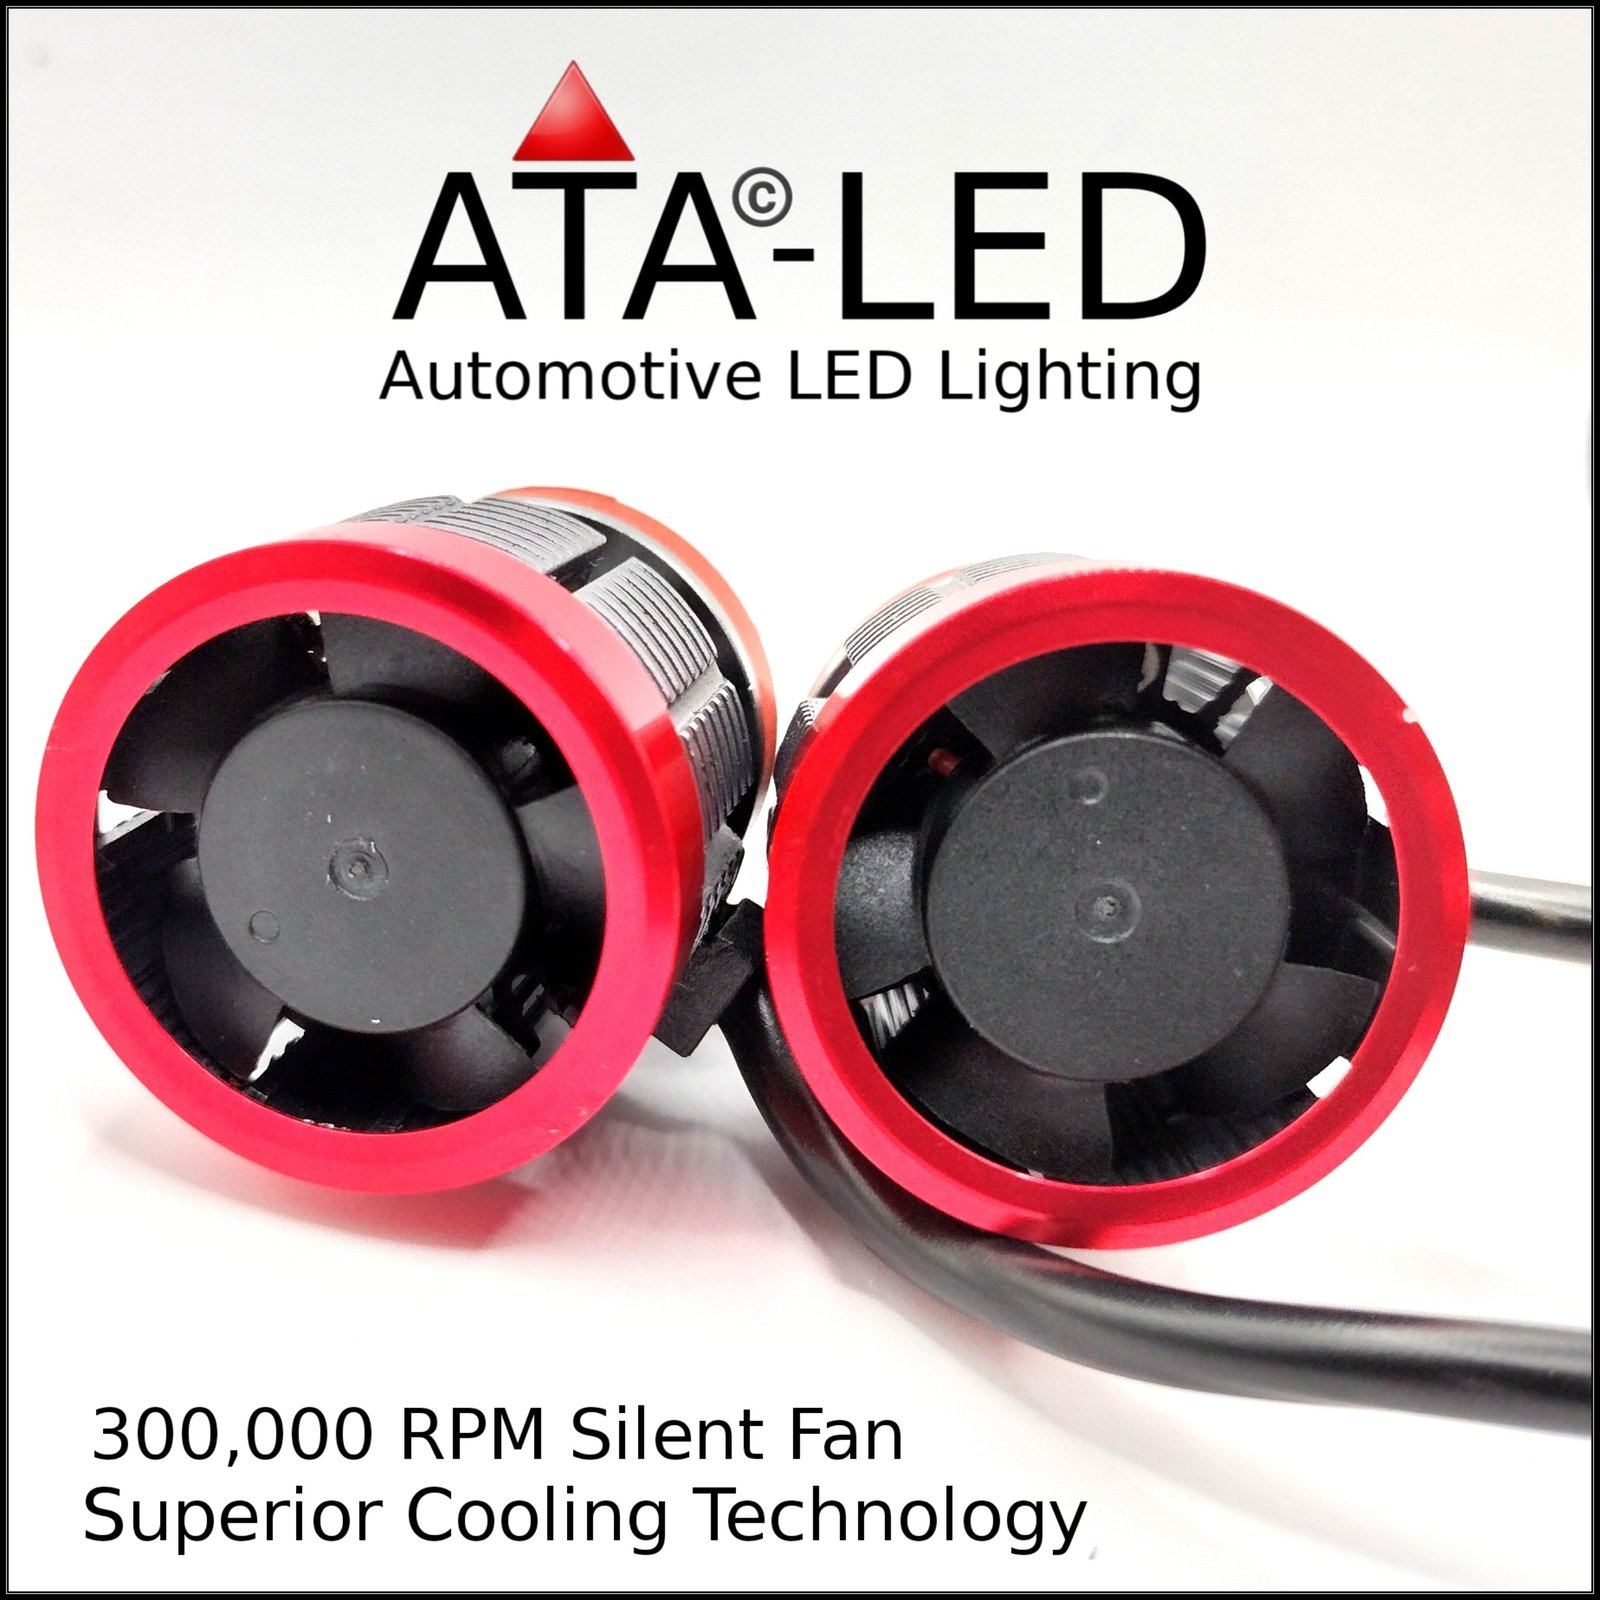 9006/HB4/9012 - Vector 9 - 26,000 Lúmens - 6000K (1 Set) 2 x ATALED Headlight bulbs